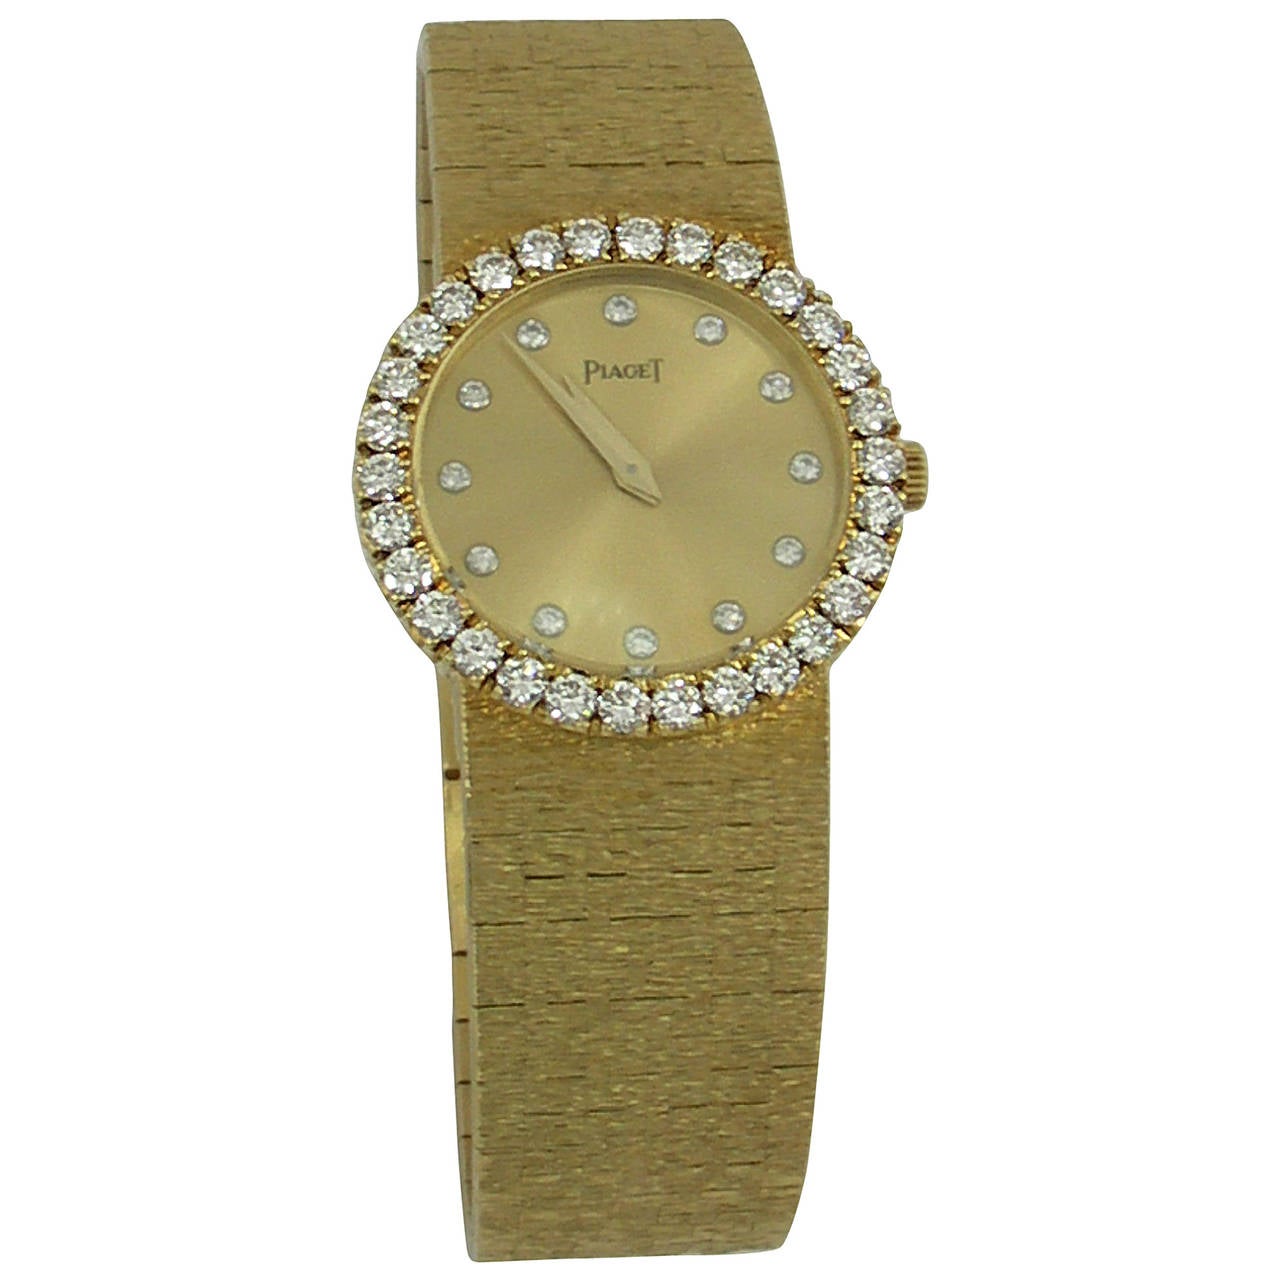 Piaget Lady's Yellow Gold Diamond Wristwatch